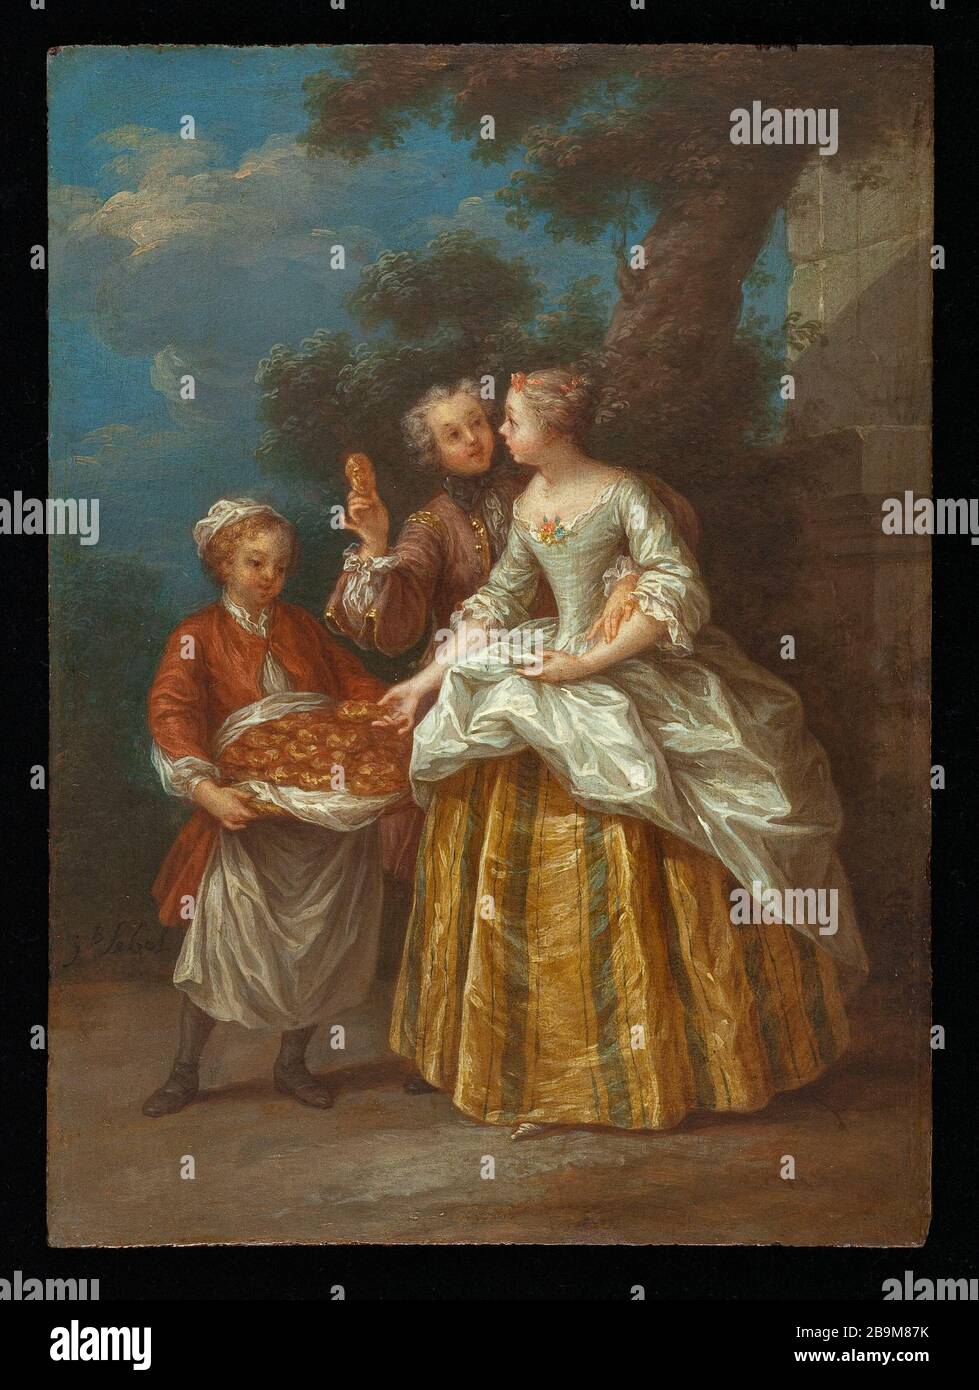 IL MERCANTE DI JEAN-Baptiste LEBEL SHRIVED (mort vers 1748-49). "Le marchand d'échaudés". Huile sur bois, vers 1740. Parigi, museo Cognacq-Jay. Foto Stock